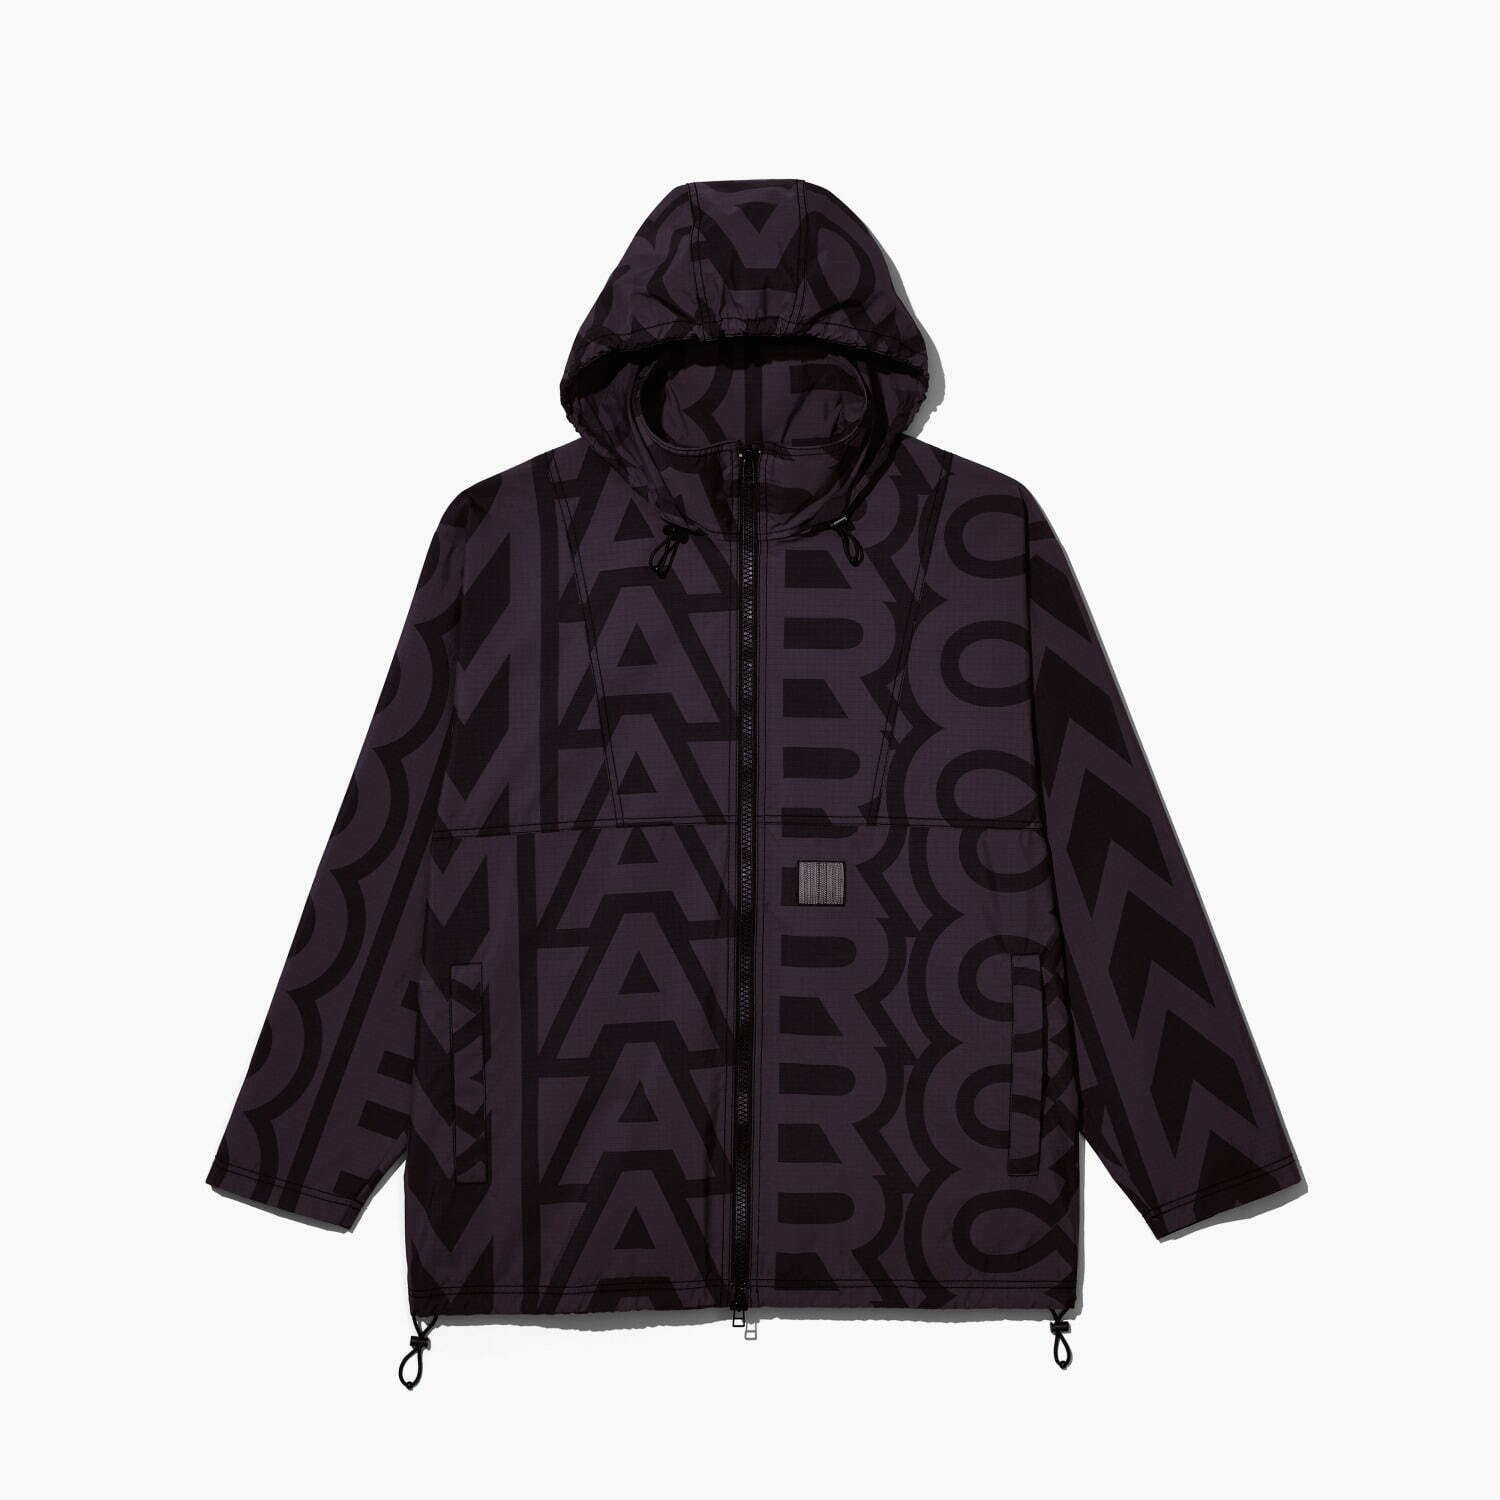 マーク ジェイコブス新作ウェア、“バーコードロゴ刺繍”のジャケット